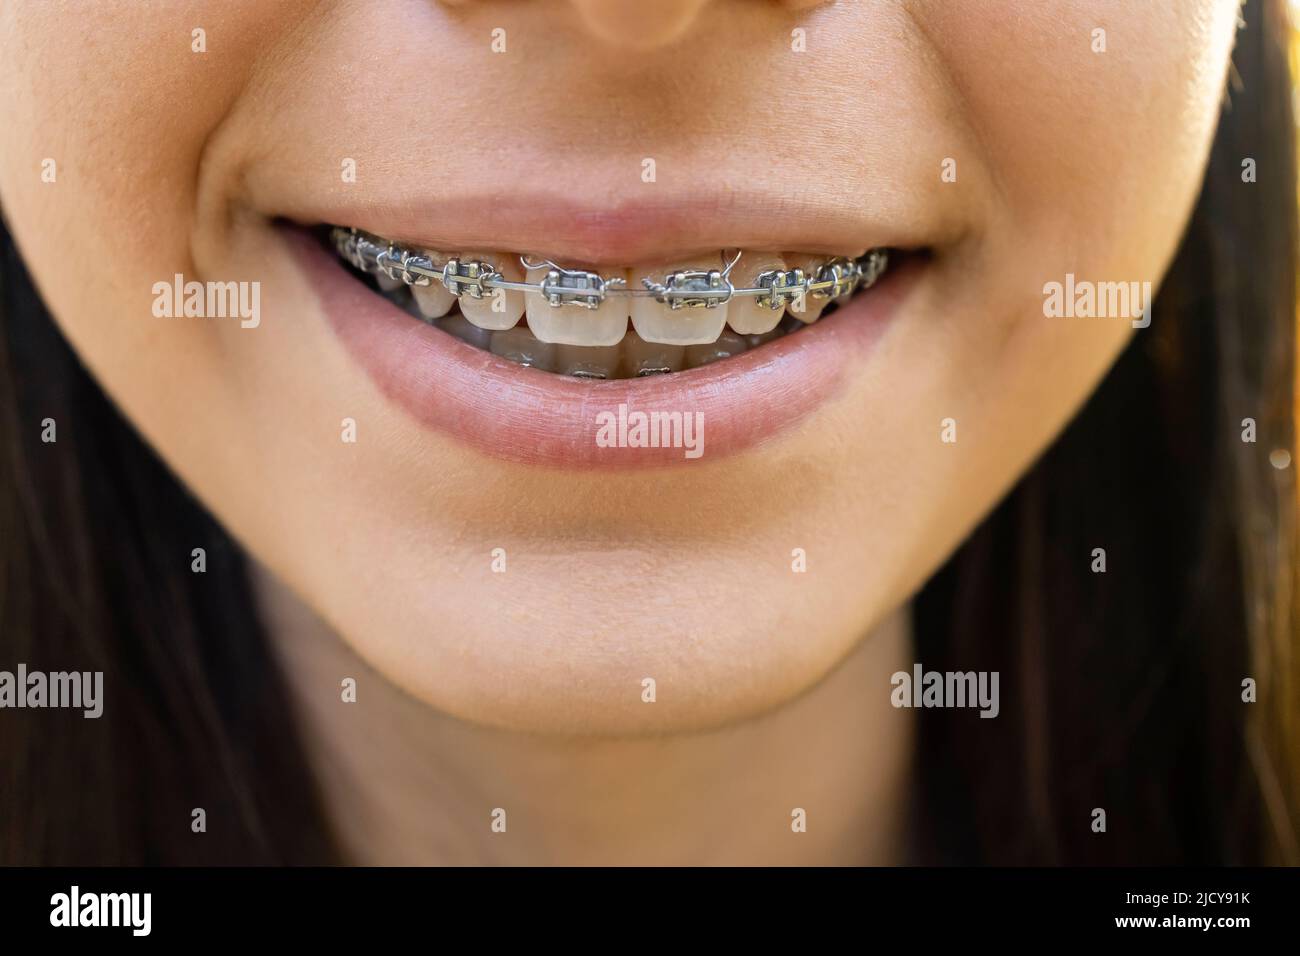 Bella ragazza sorridente che mostra fermo, bretelle per denti. Ortodonzia tema dentistico, metodi di correzione dell'aquilone dei denti, primo piano Foto Stock